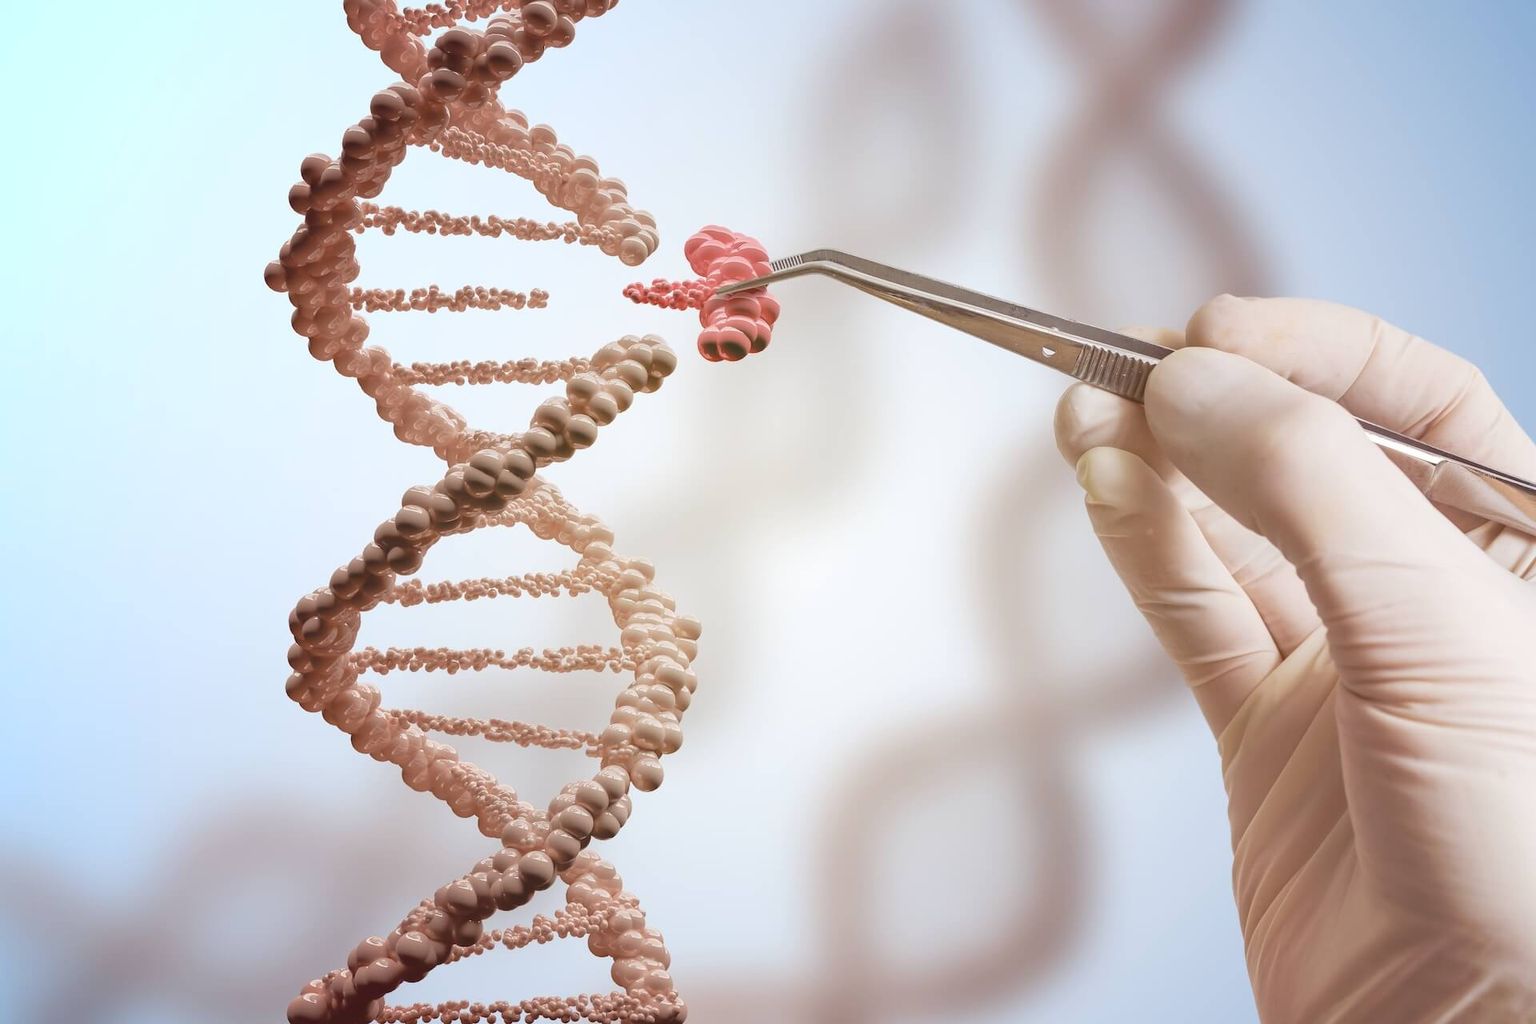 Concepto de ingeniería genética y manipulación genética. La mano sustituye parte de una molécula de ADN. Representación en 3D del ADN.